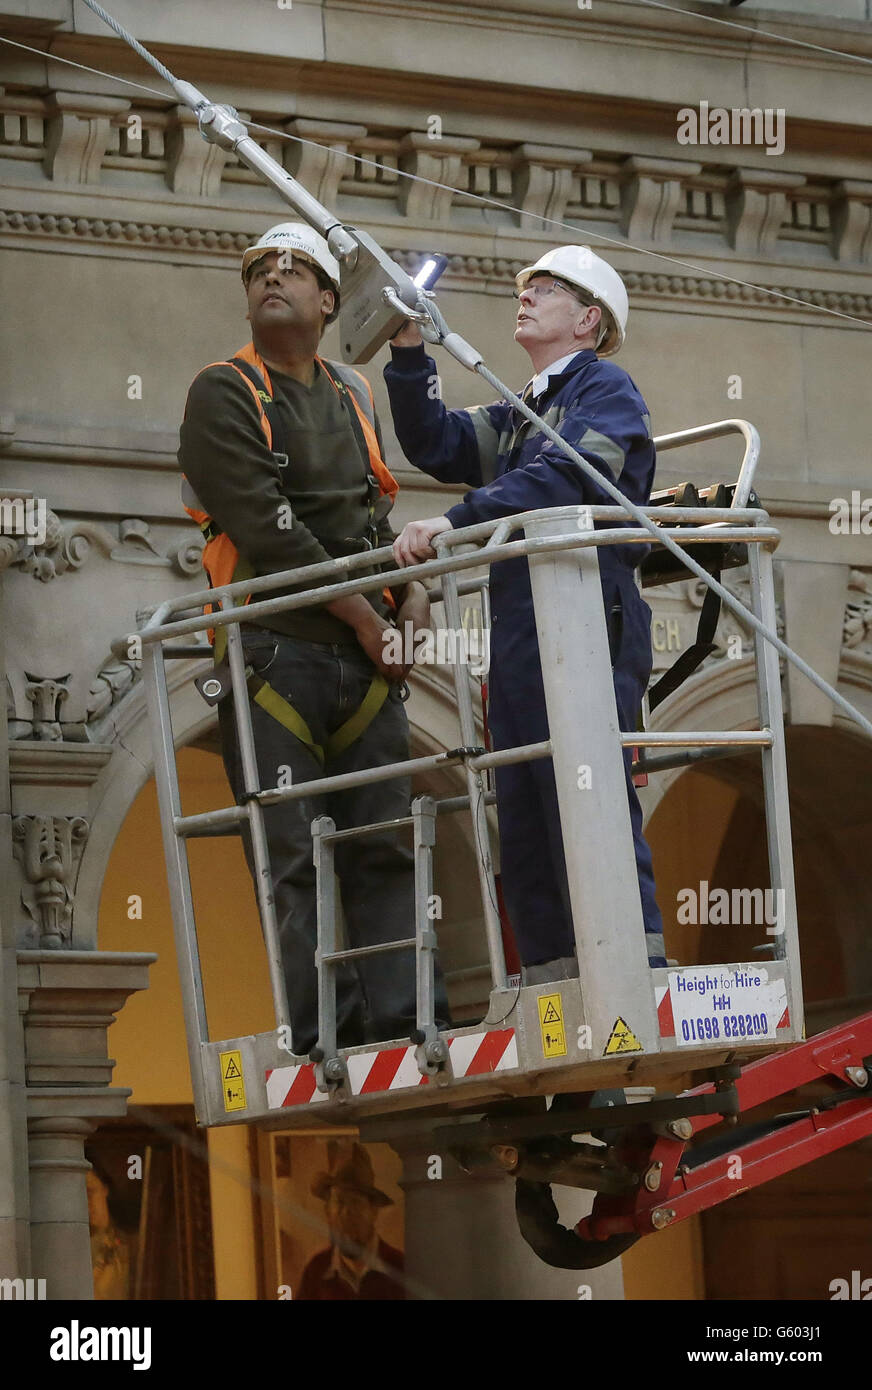 L'ingegnere Bill Kermack (a sinistra) e l'operatore John Laird (a destra) controllano i cavi di sospensione che tengono uno Spitfire alla Kelvingrove Art Gallery and Museum di Glasgow, Scozia. Foto Stock